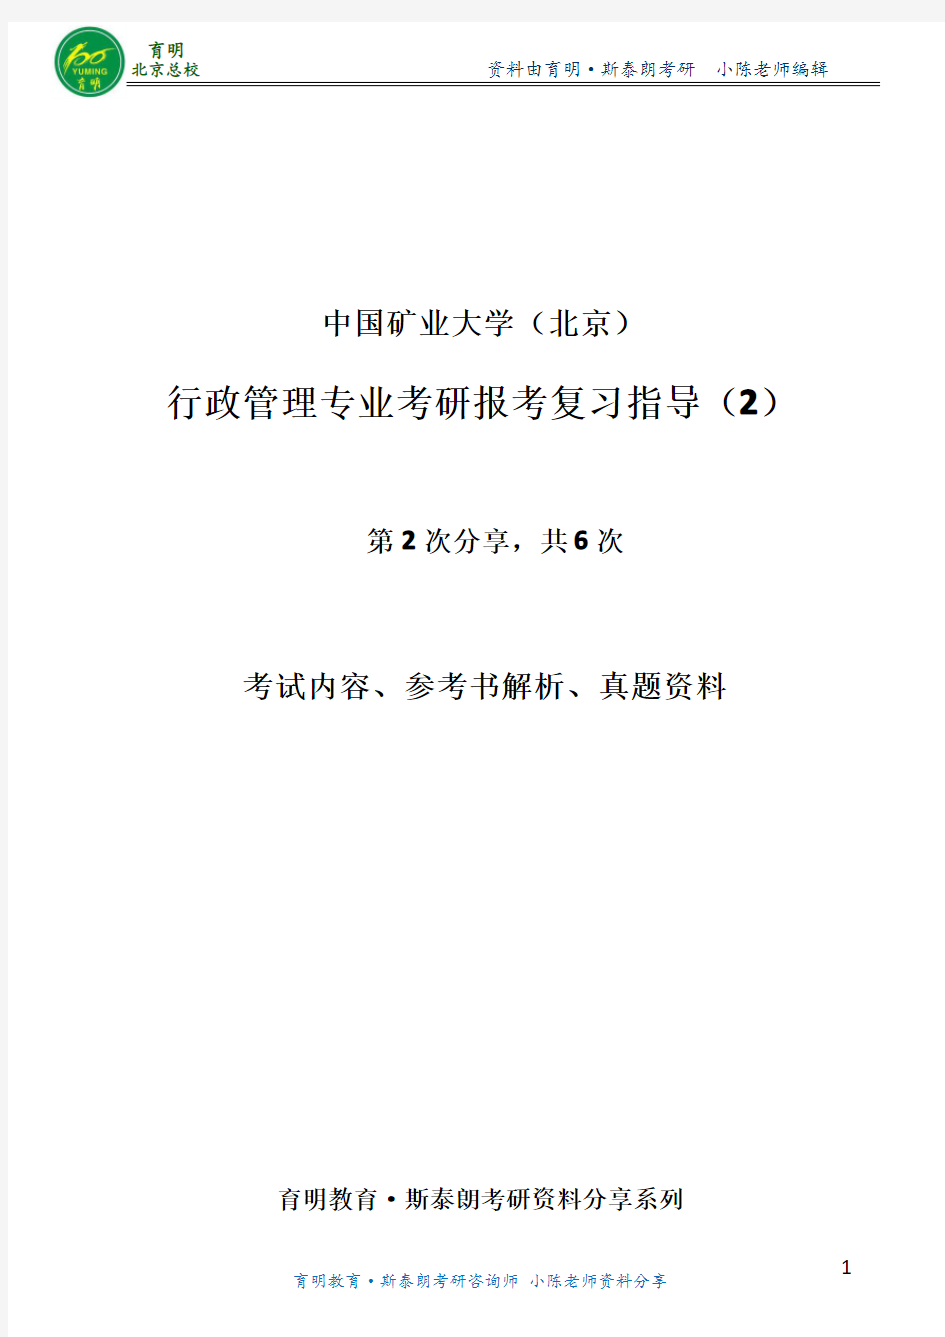 行政管理考研-中国矿大行政管理考研考试内容参考书